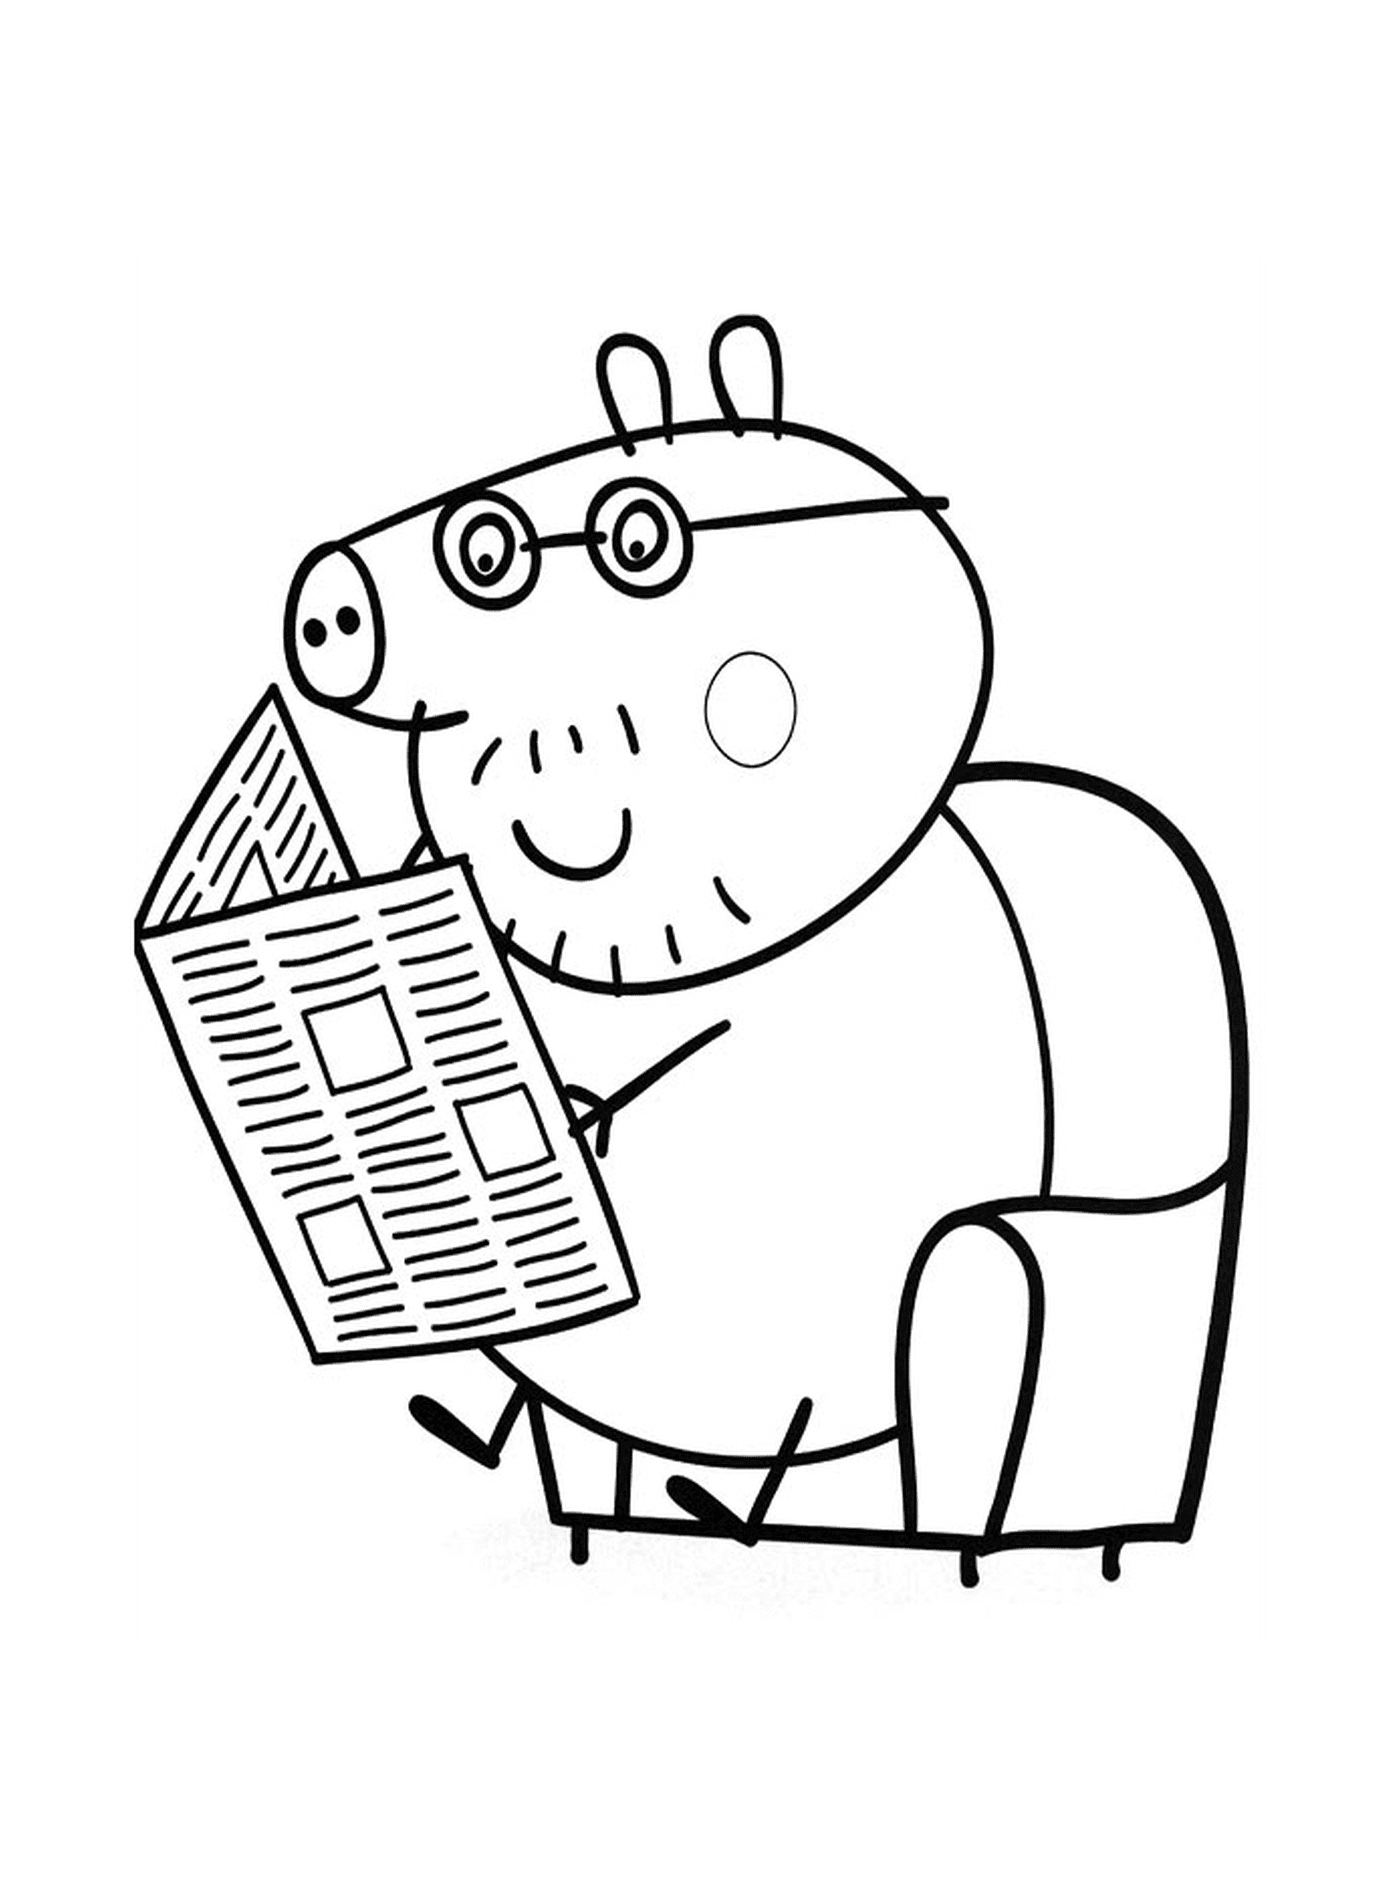  阅读报纸的猪 